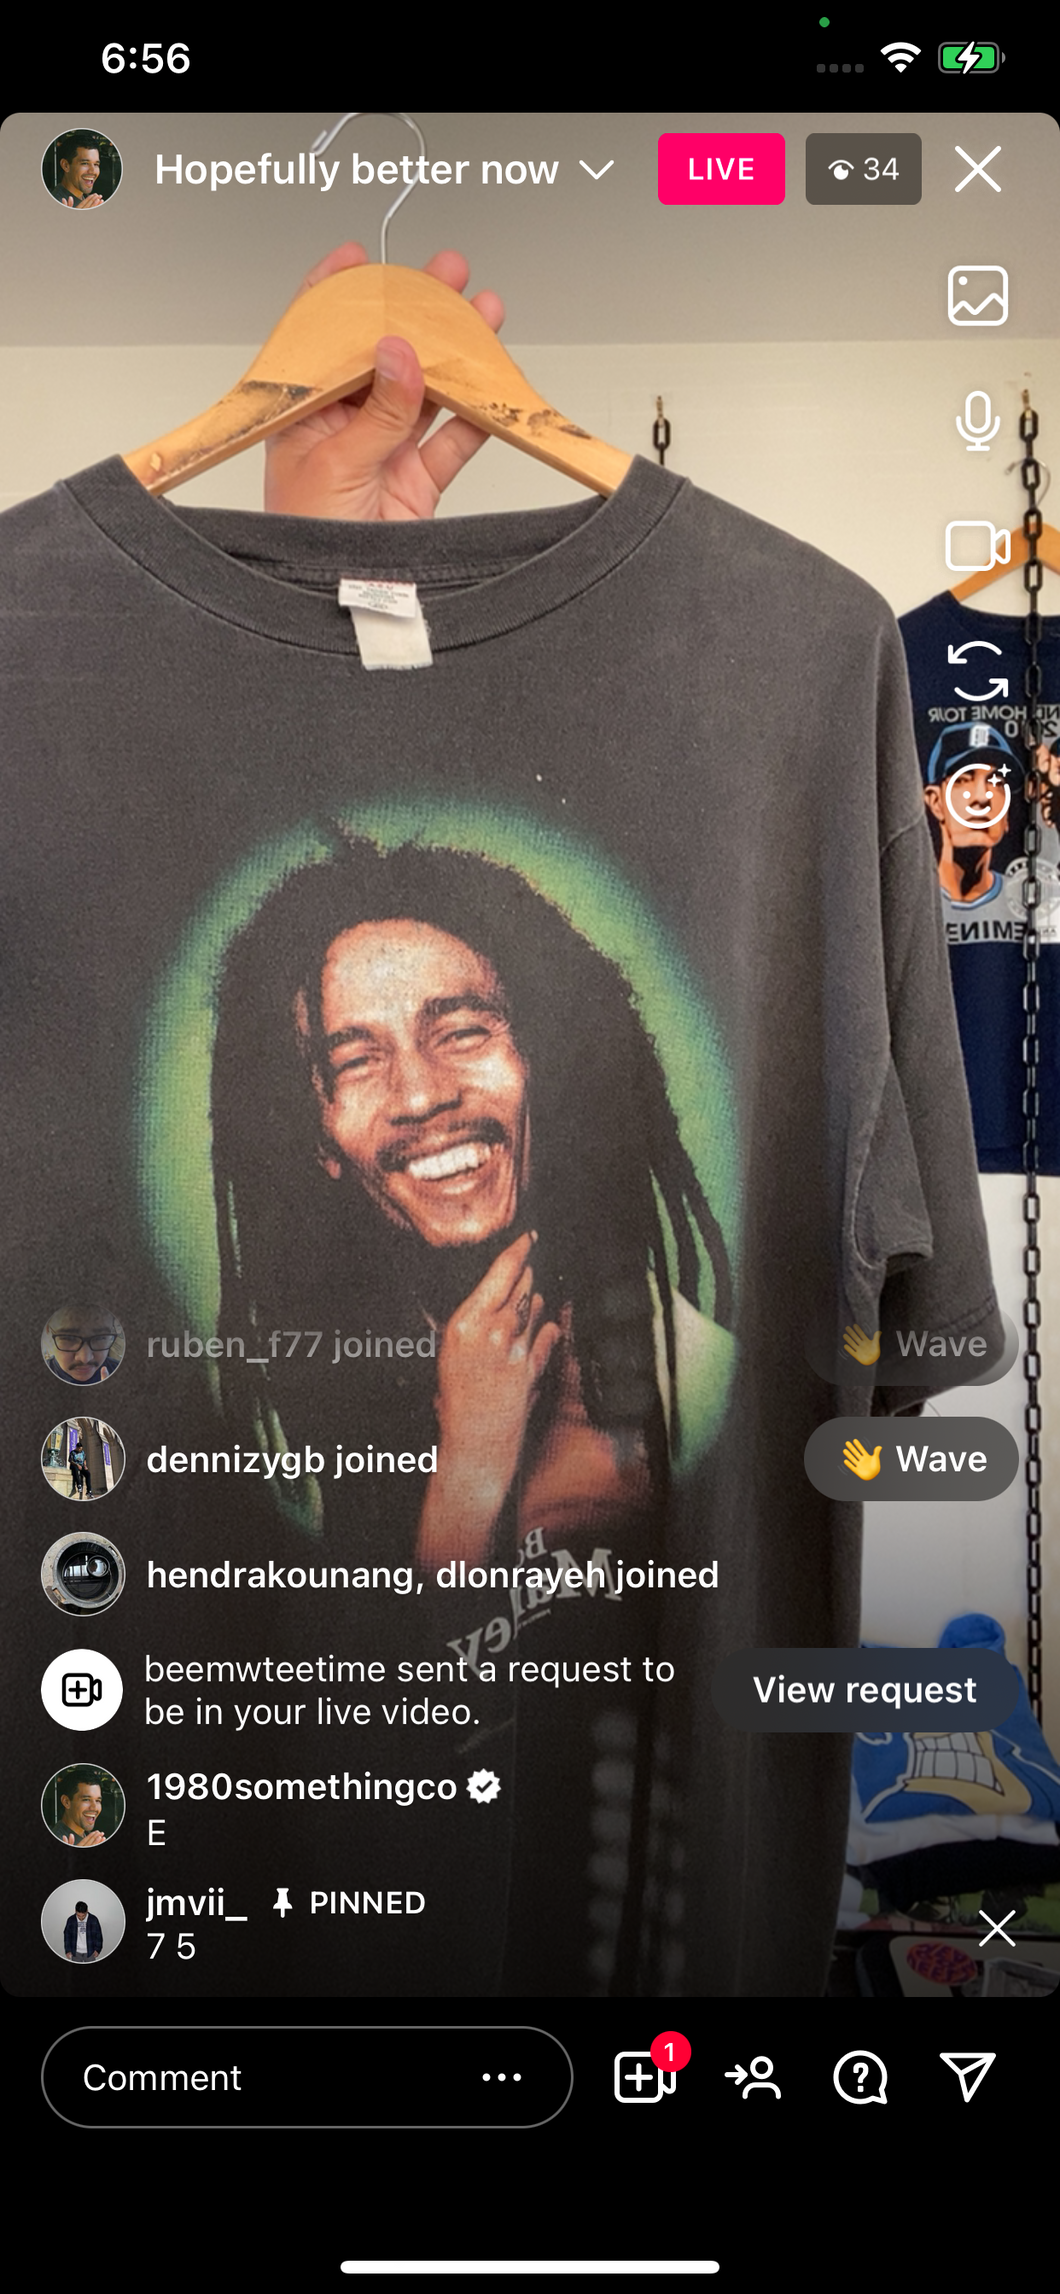 Bob Marley shirt (secondhand)